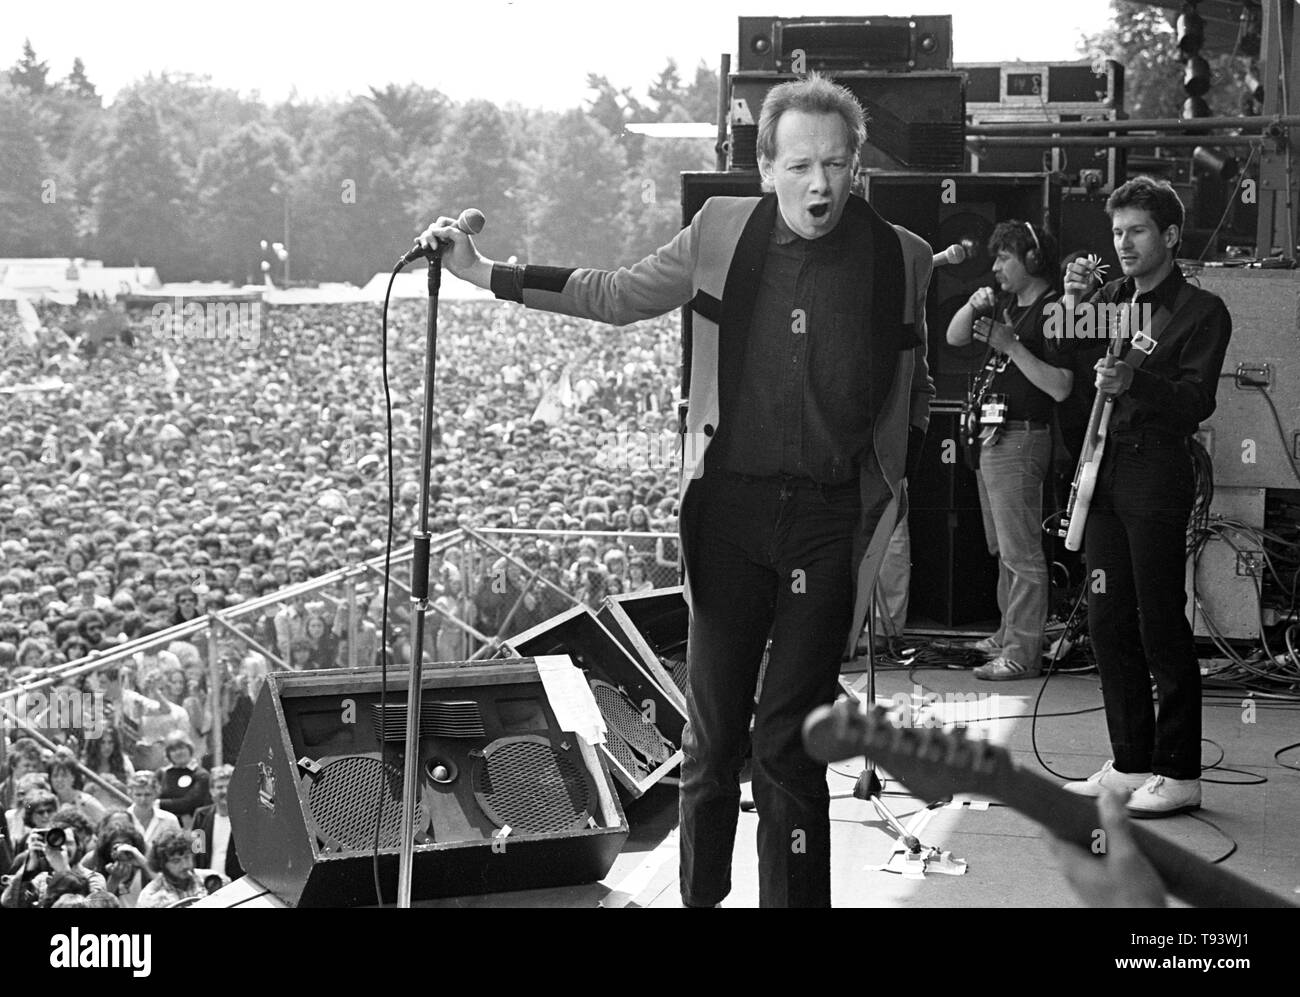 GELEEN, Niederlande - 26. Mai: englischer Sänger Joe Jackson führt live auf der Bühne bei PinkPop Festival in Geleen, Niederlande Am 26. Mai 1980. (Foto von Gijsbert Hanekroot) Stockfoto